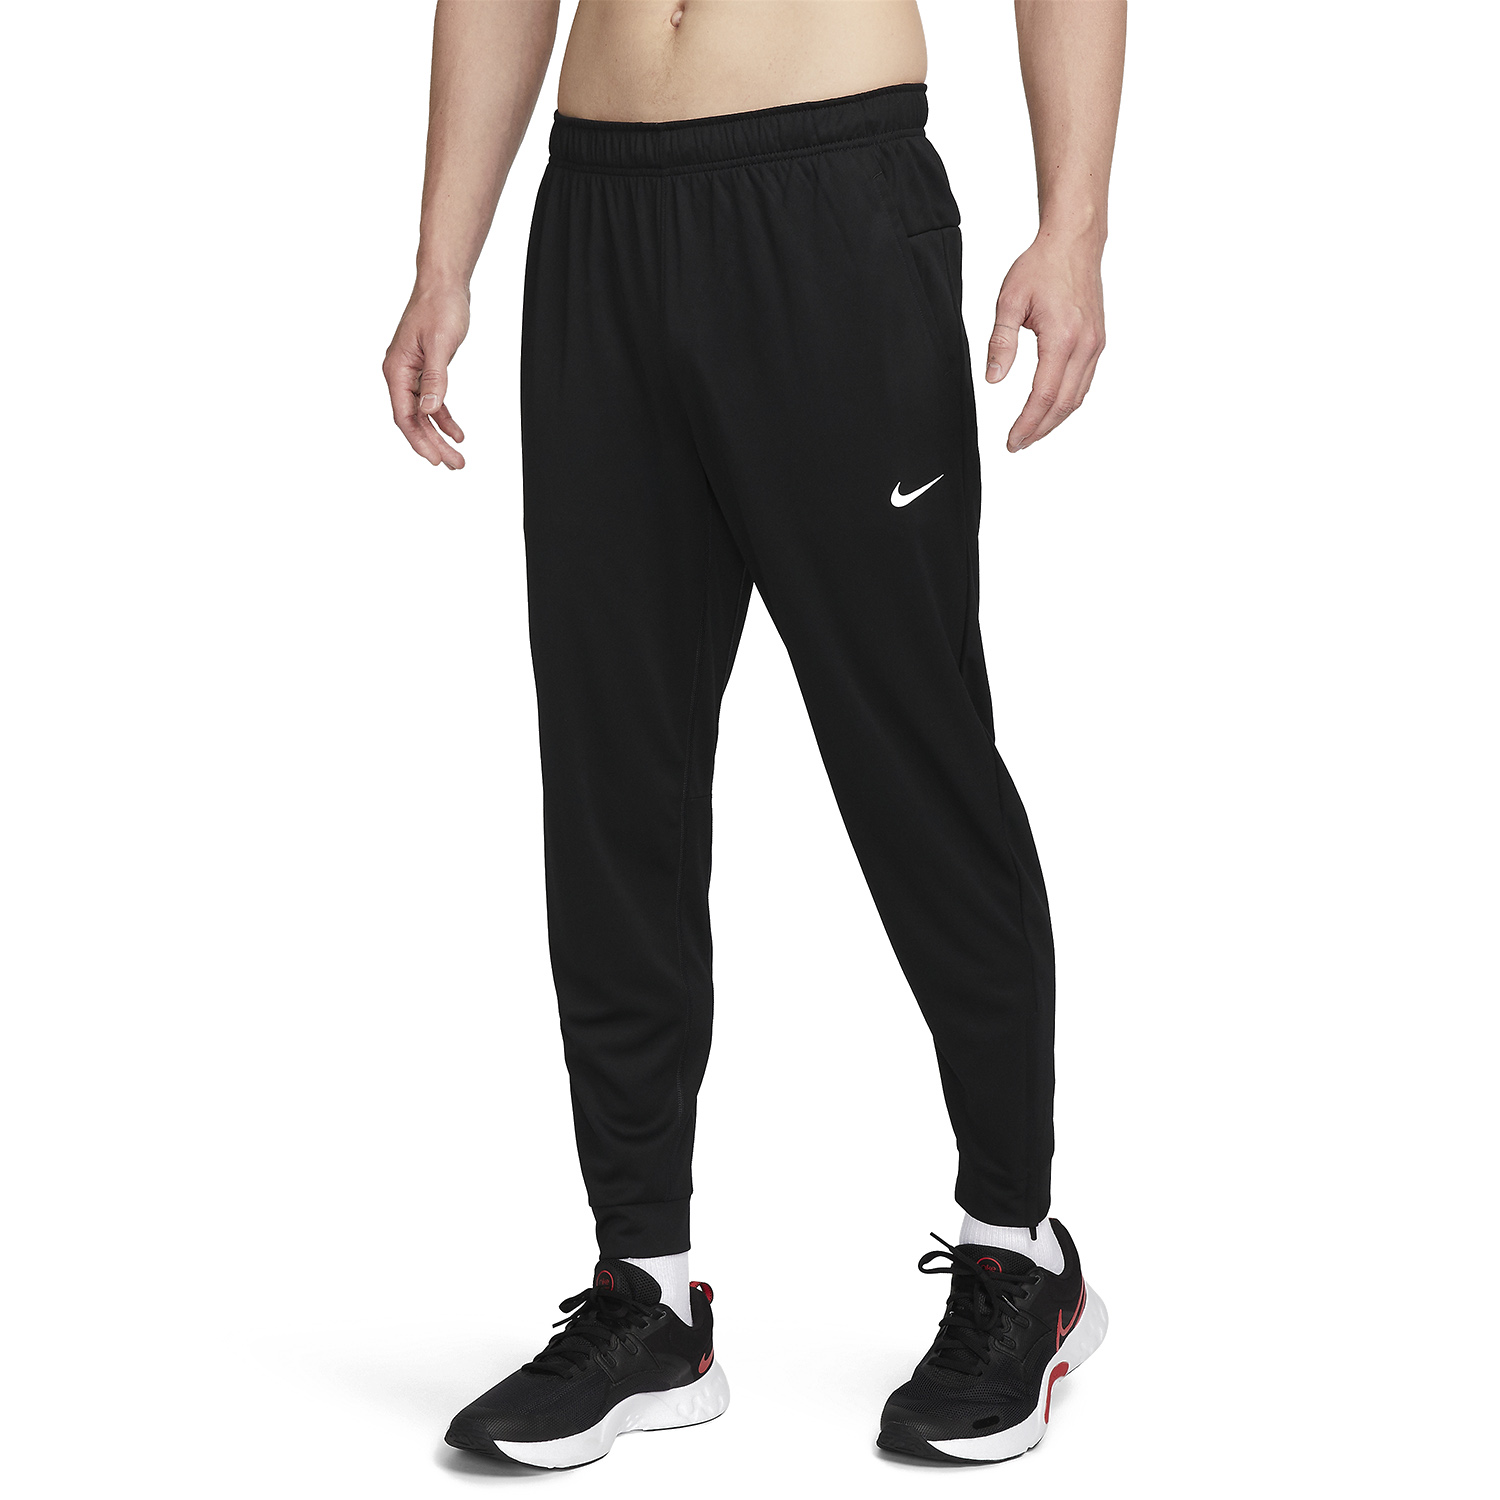 10 Unbelievable Nike Dri-Fit Pants For 2023